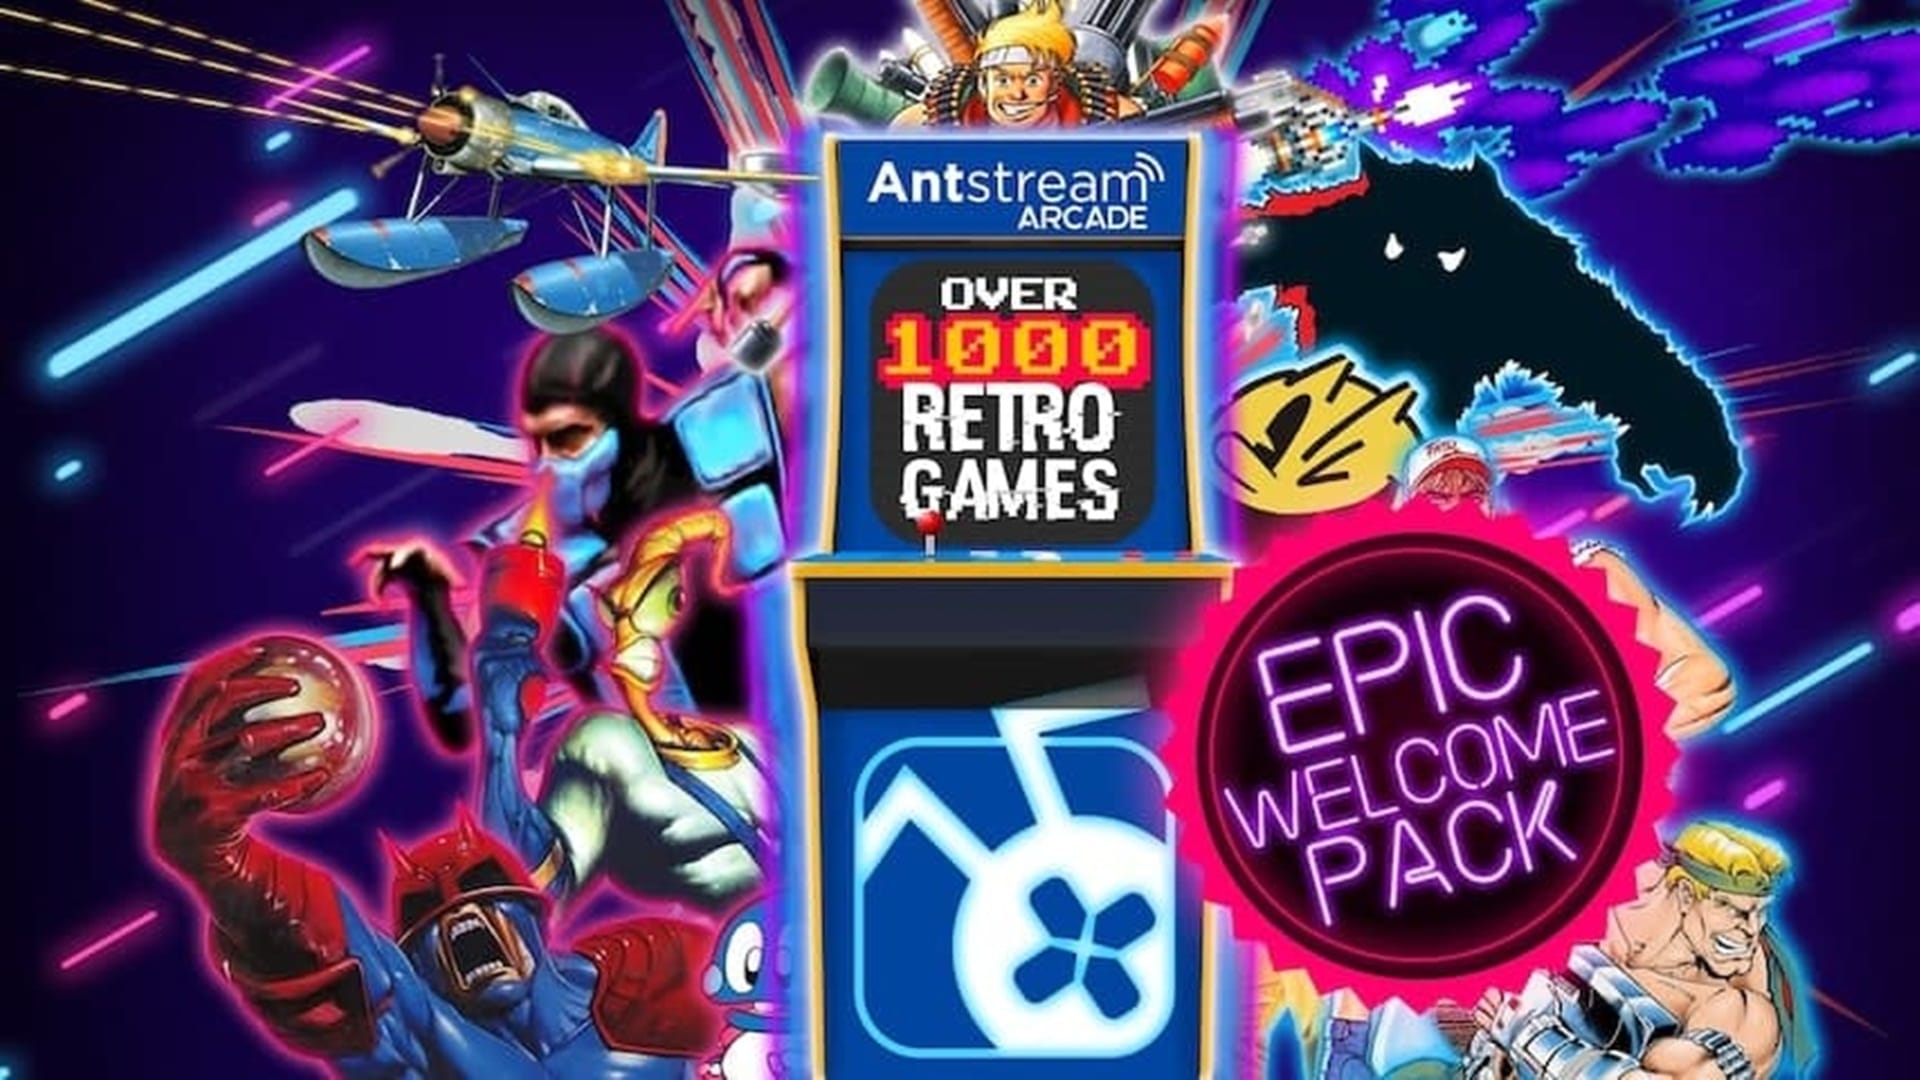 Epic Games agrega el servicio de juegos retro en la nube con Antstream Arcade, GamersRD